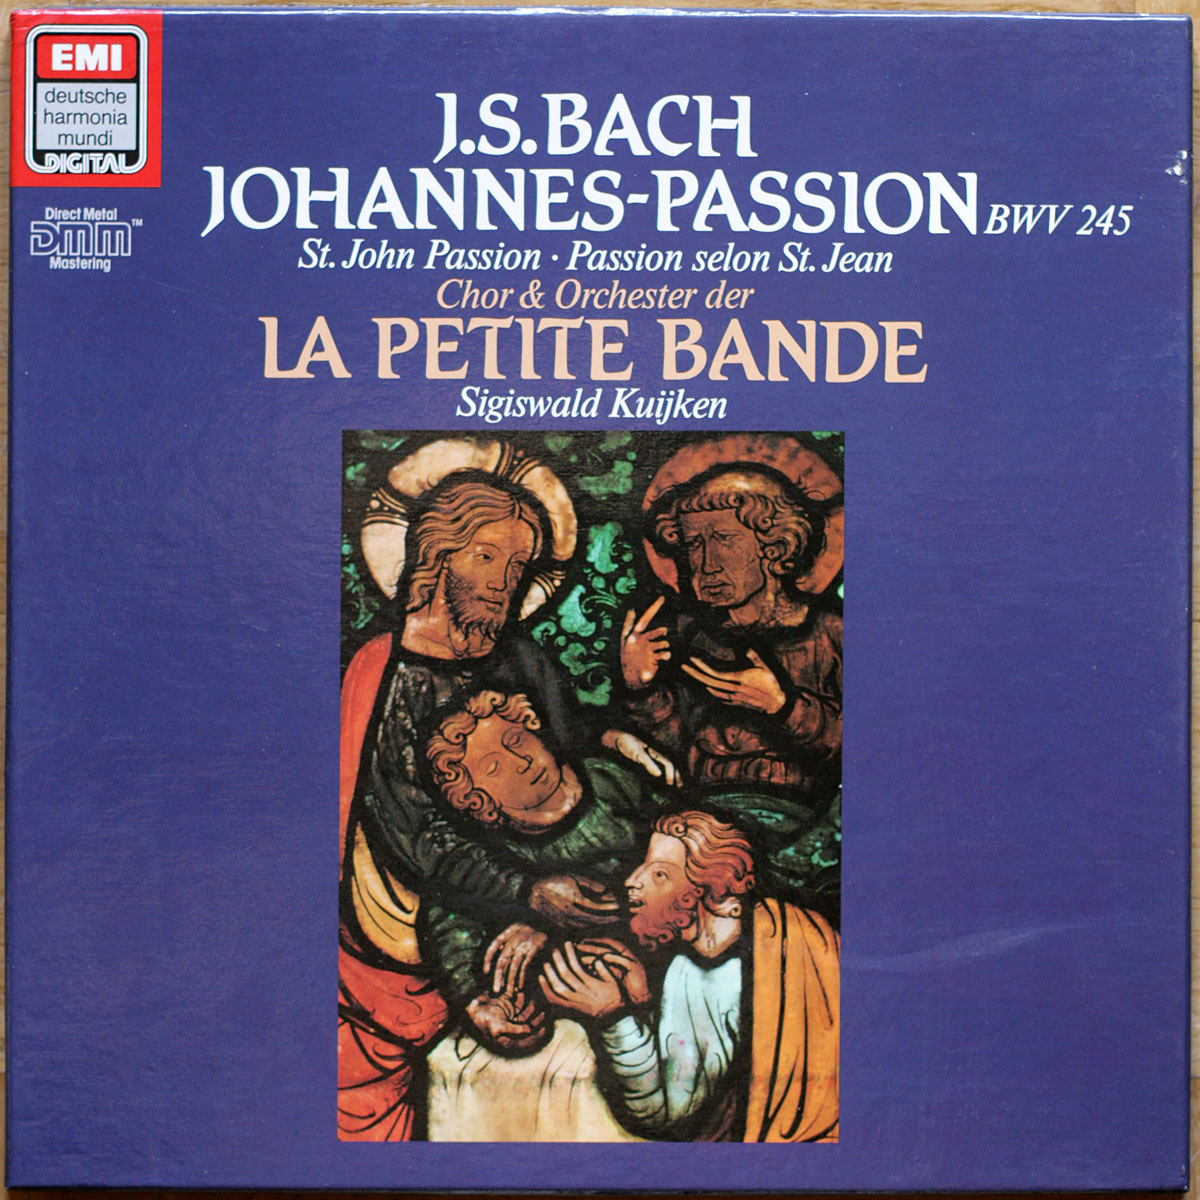 Bach • Passion selon Saint Jean • Johannes-Passion • BWV 245 • EMI 7 49614 1 • Harry van der Kamp • Christoph Prégardien • René Jacobs • La Petite Bande • Sigiswald Kuijken